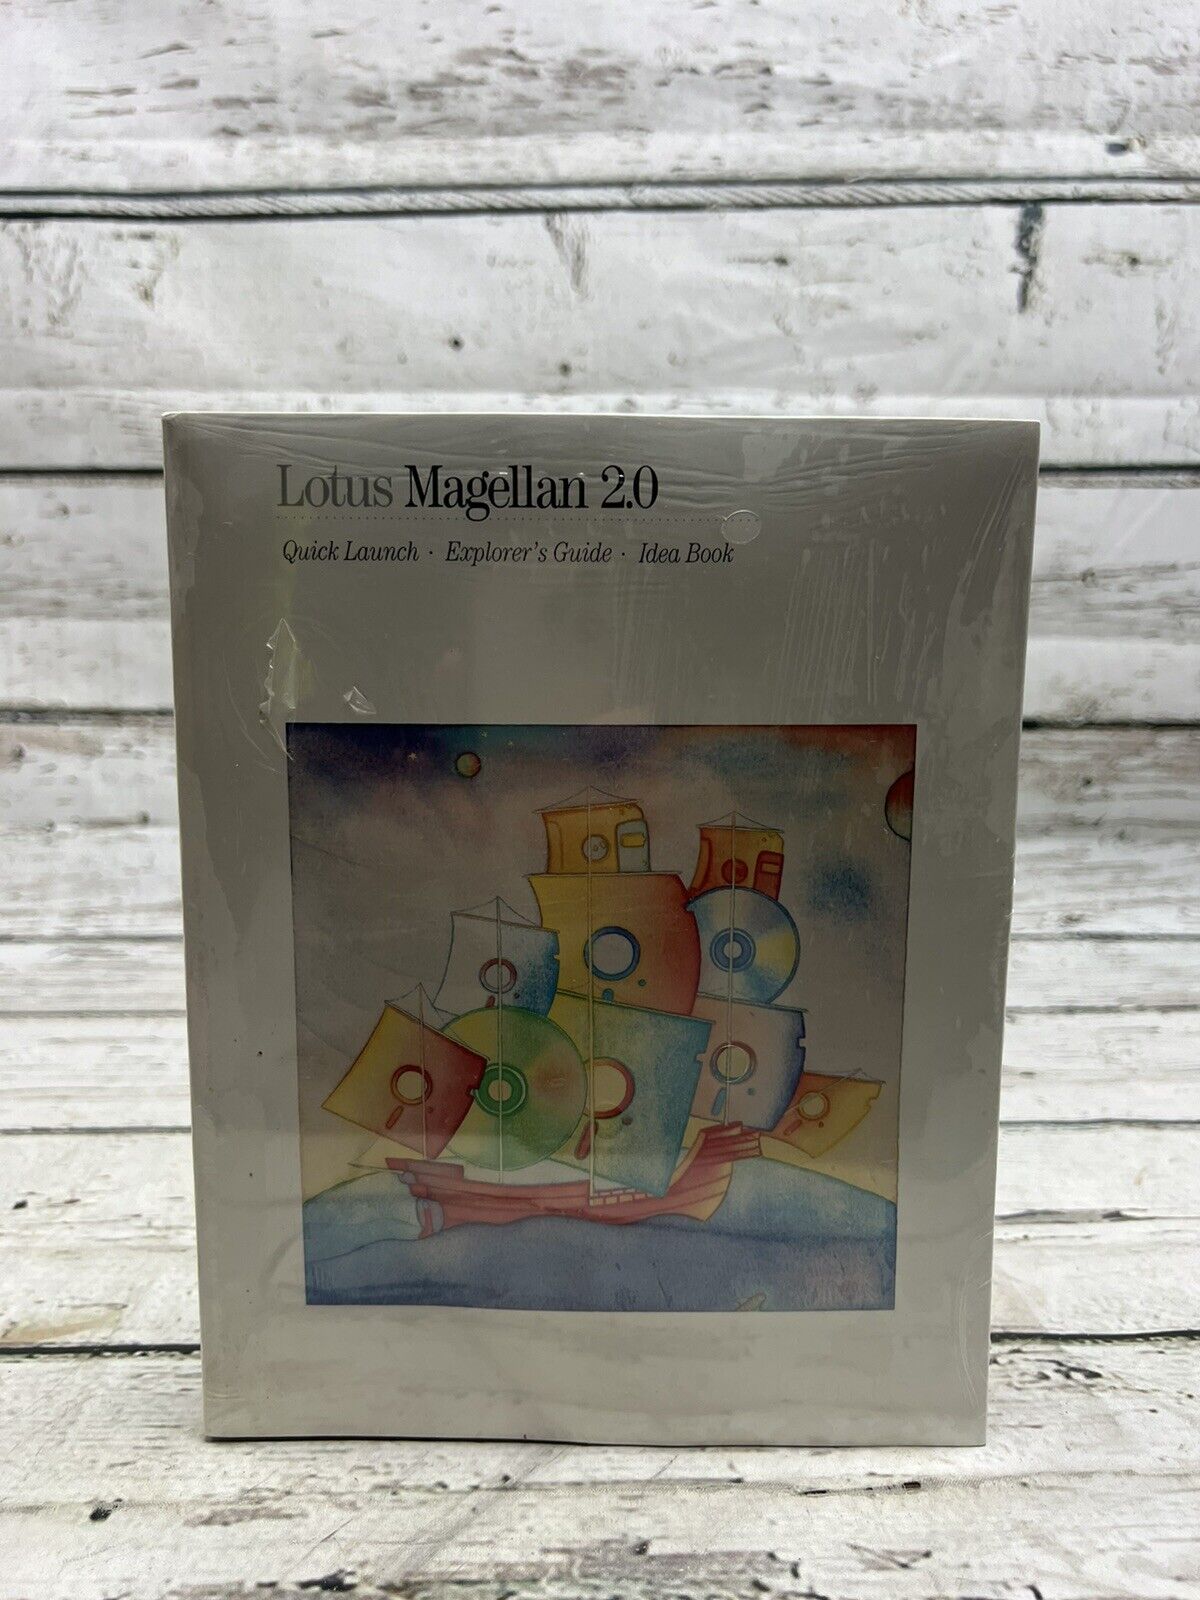 VTG Lotus Magellan 2.0 1990 Book User Manual Software Windows - Brand New Sealed